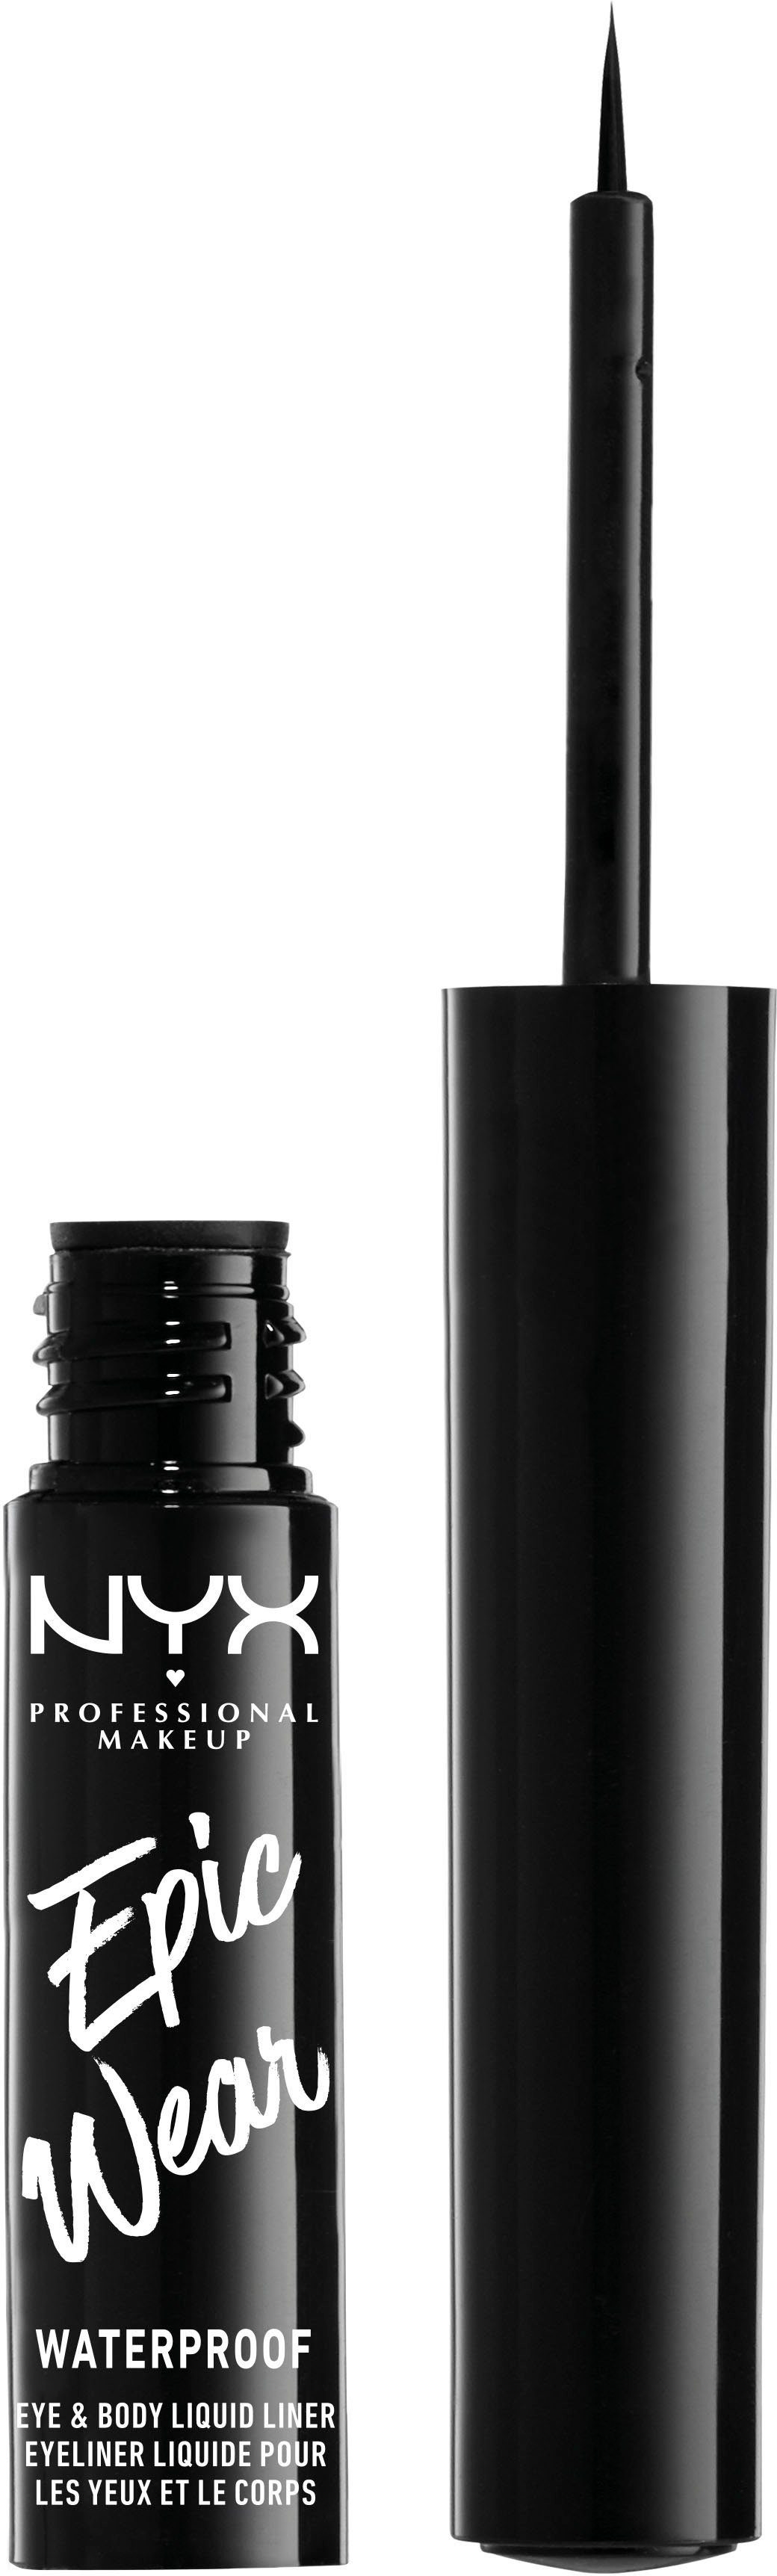 Liquid 01 Epic Wear Professional Eyeliner NYX Liner, Makeup Black Waterproof